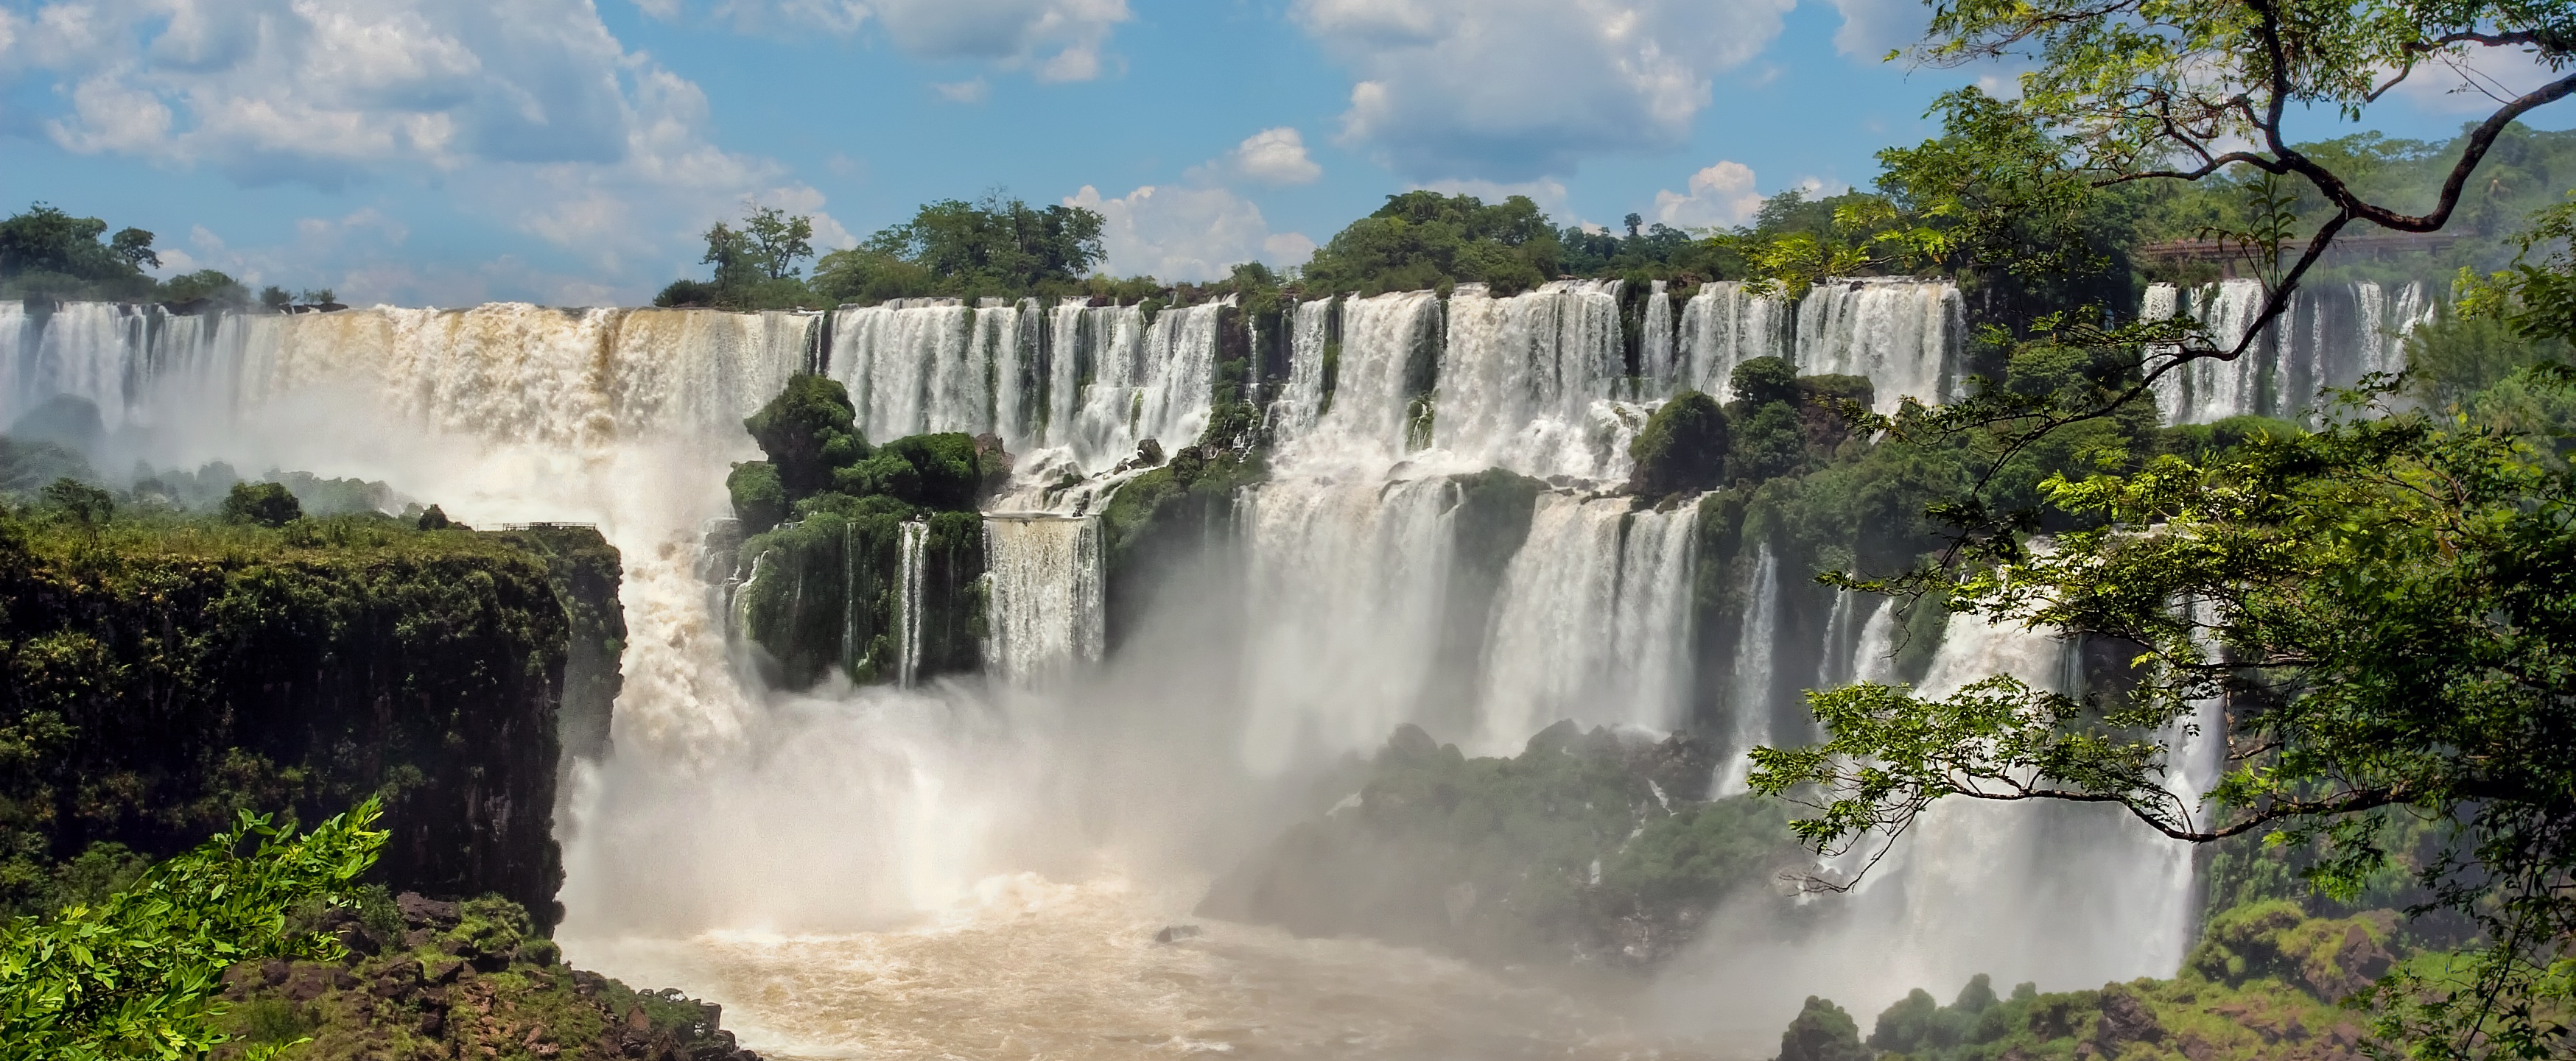 Las cataratas más instagrameables del mundo Iguazú